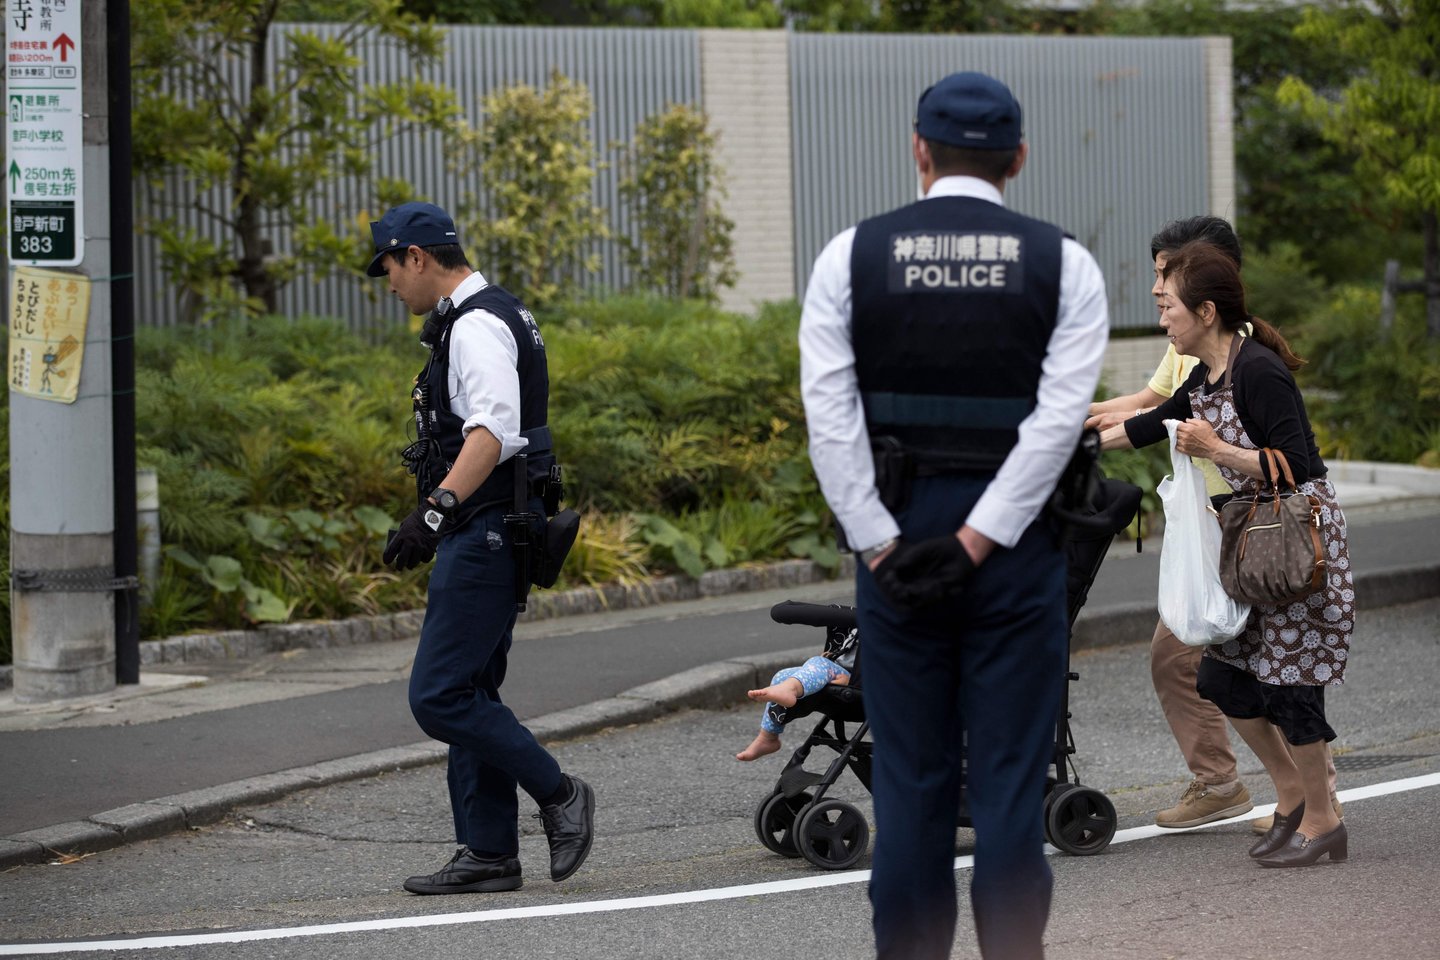  Japonijoje dėl senyvo amžiaus vairuotojų kaltės dažnai nutinka panašių eismo įvykių, neretai pasibaigiančių tragiškai.<br> AFP/Scanpix nuotr.